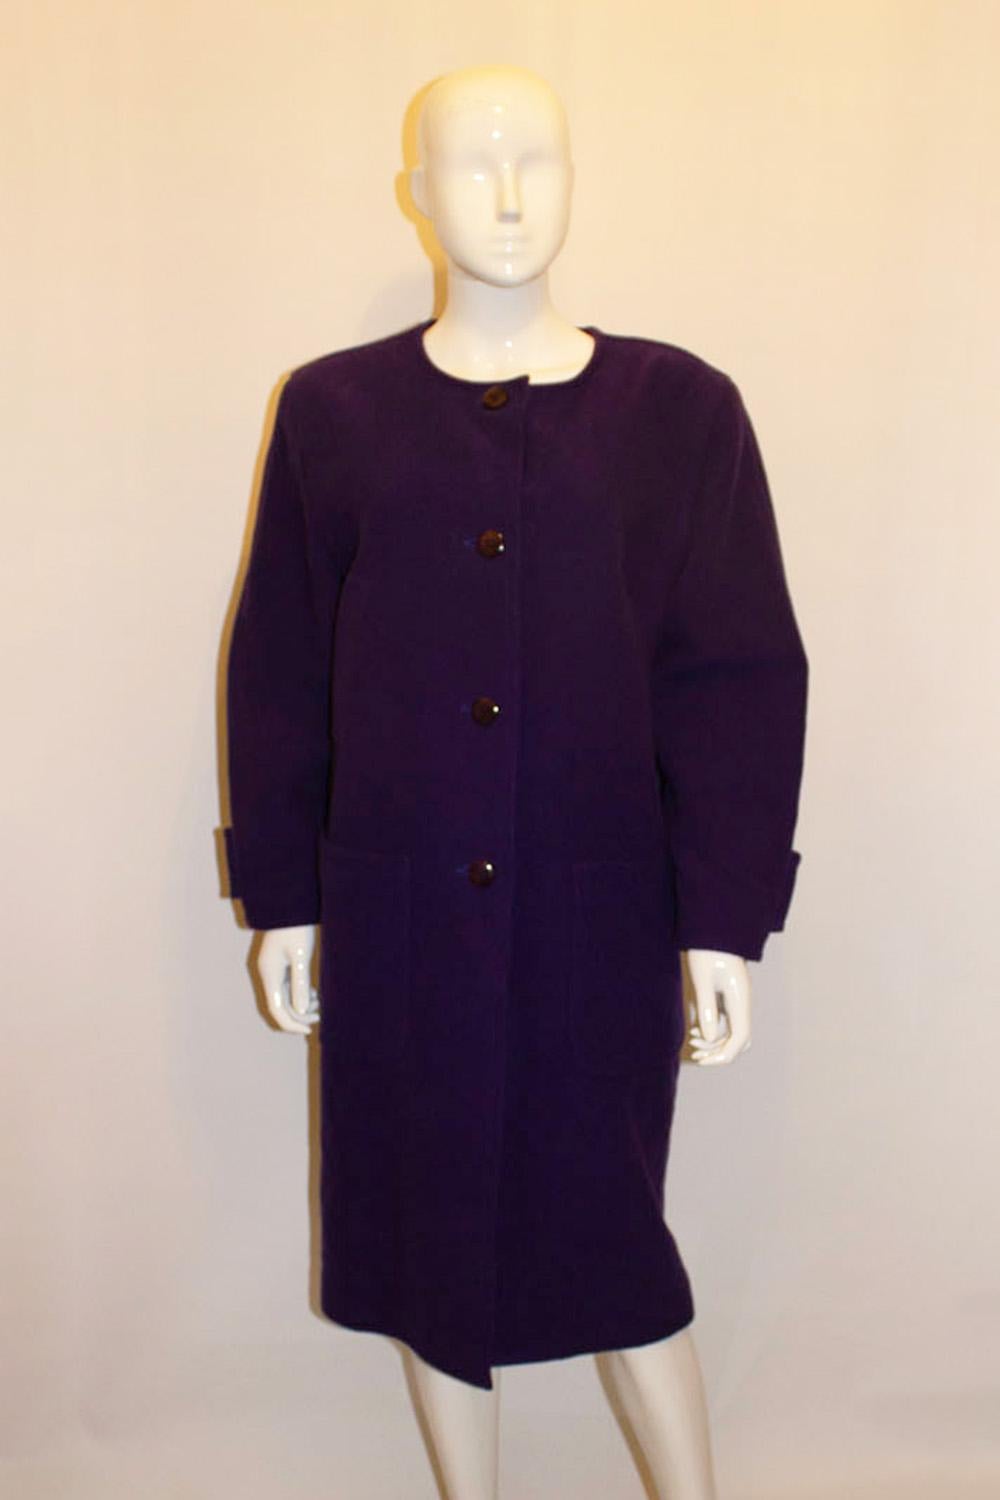 A statement vintage purple coat by Courreges For Sale 1